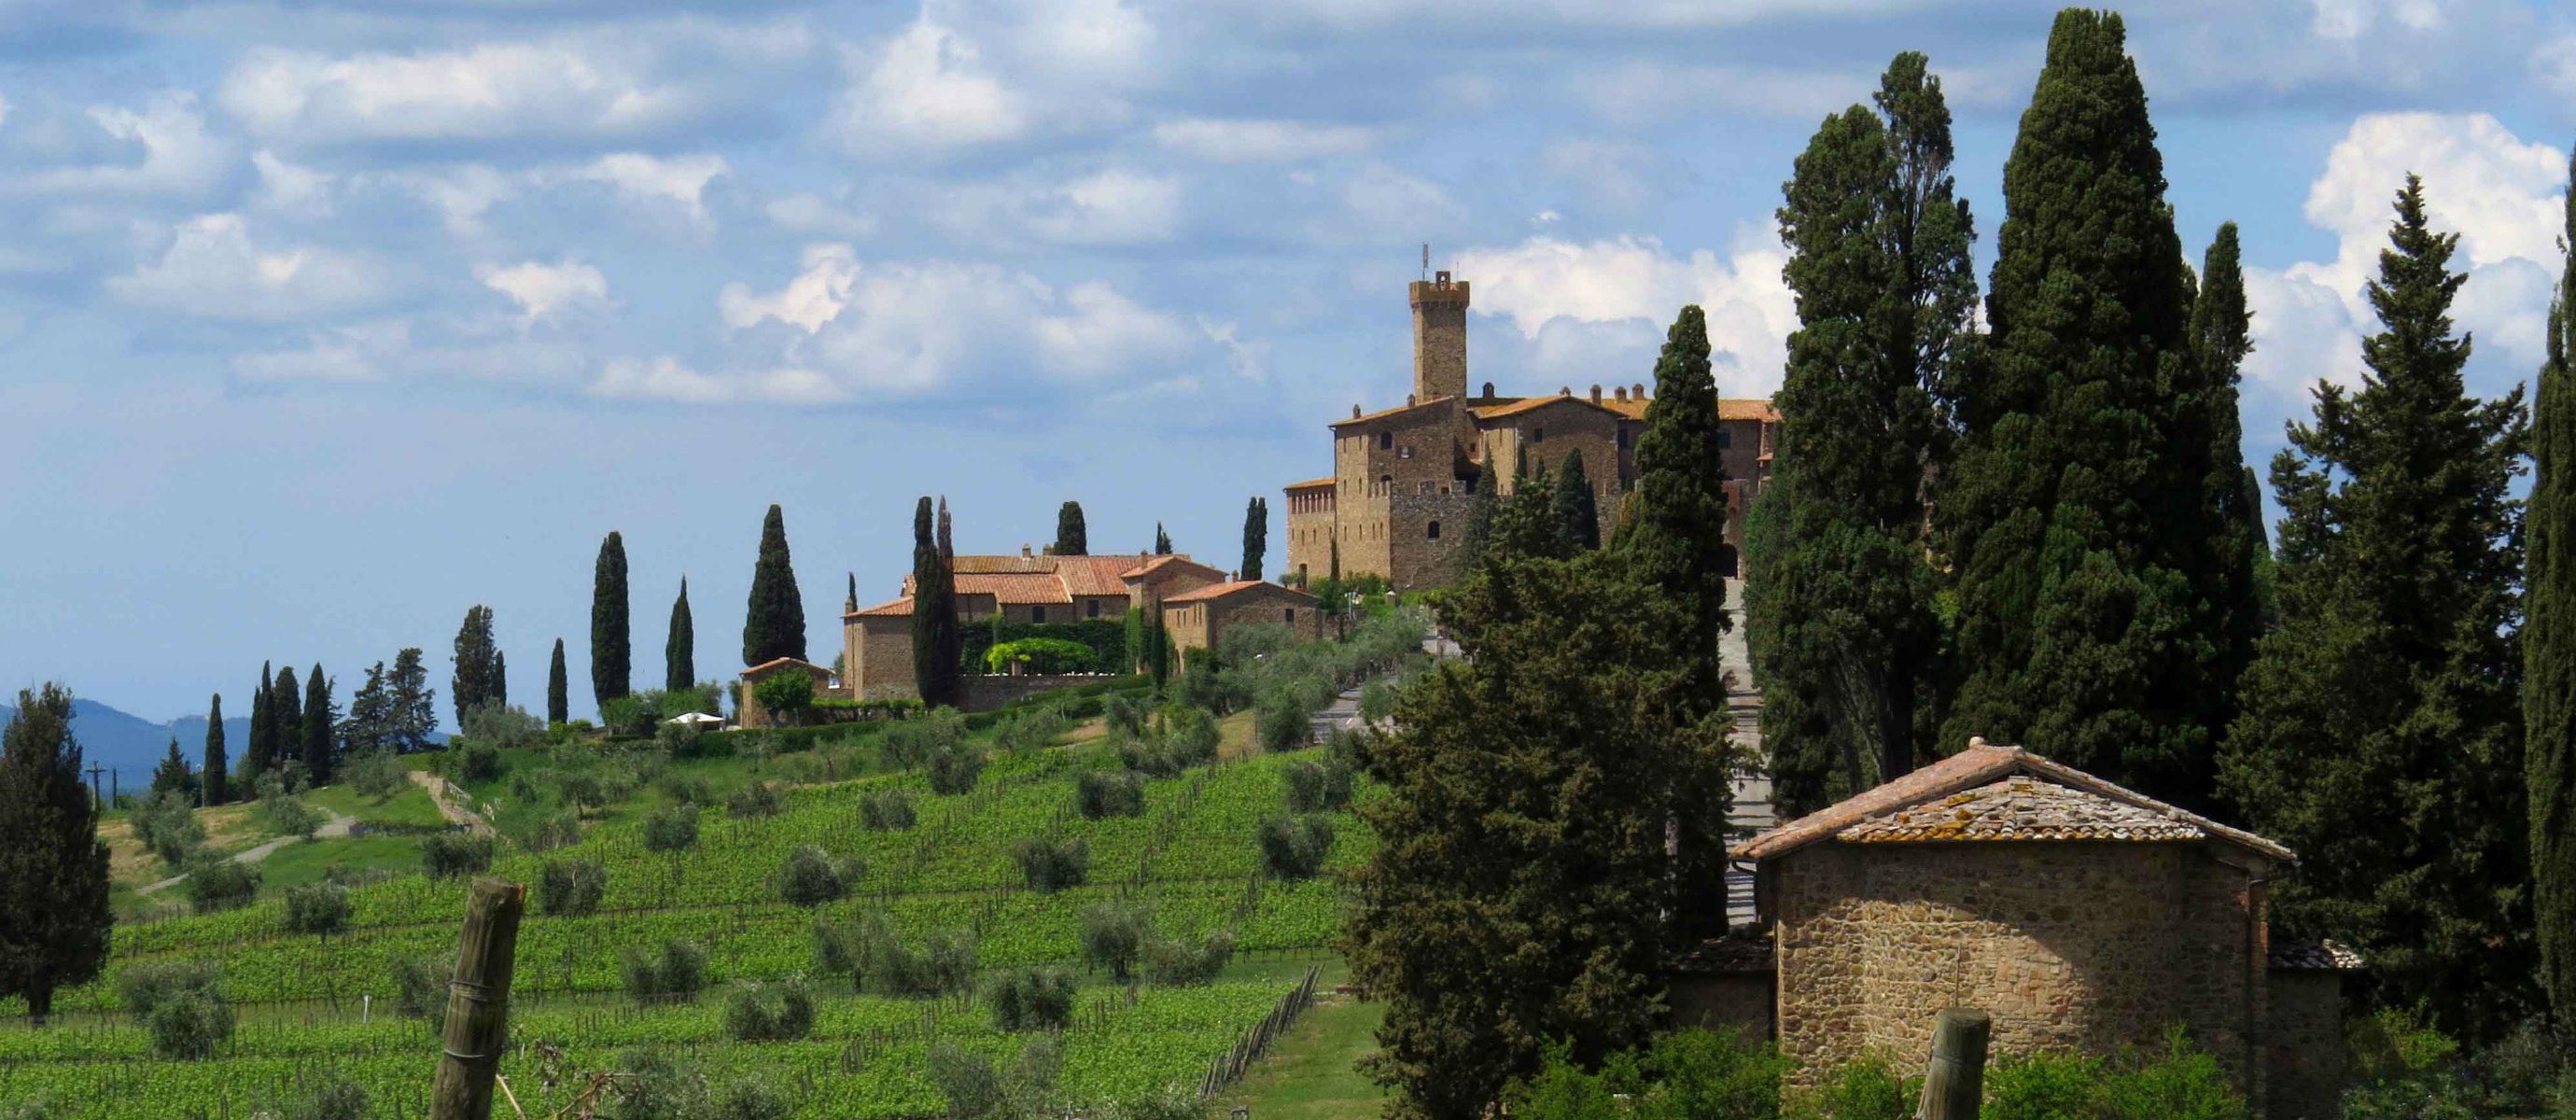 Castello Banfi – Tuscany Luxury
